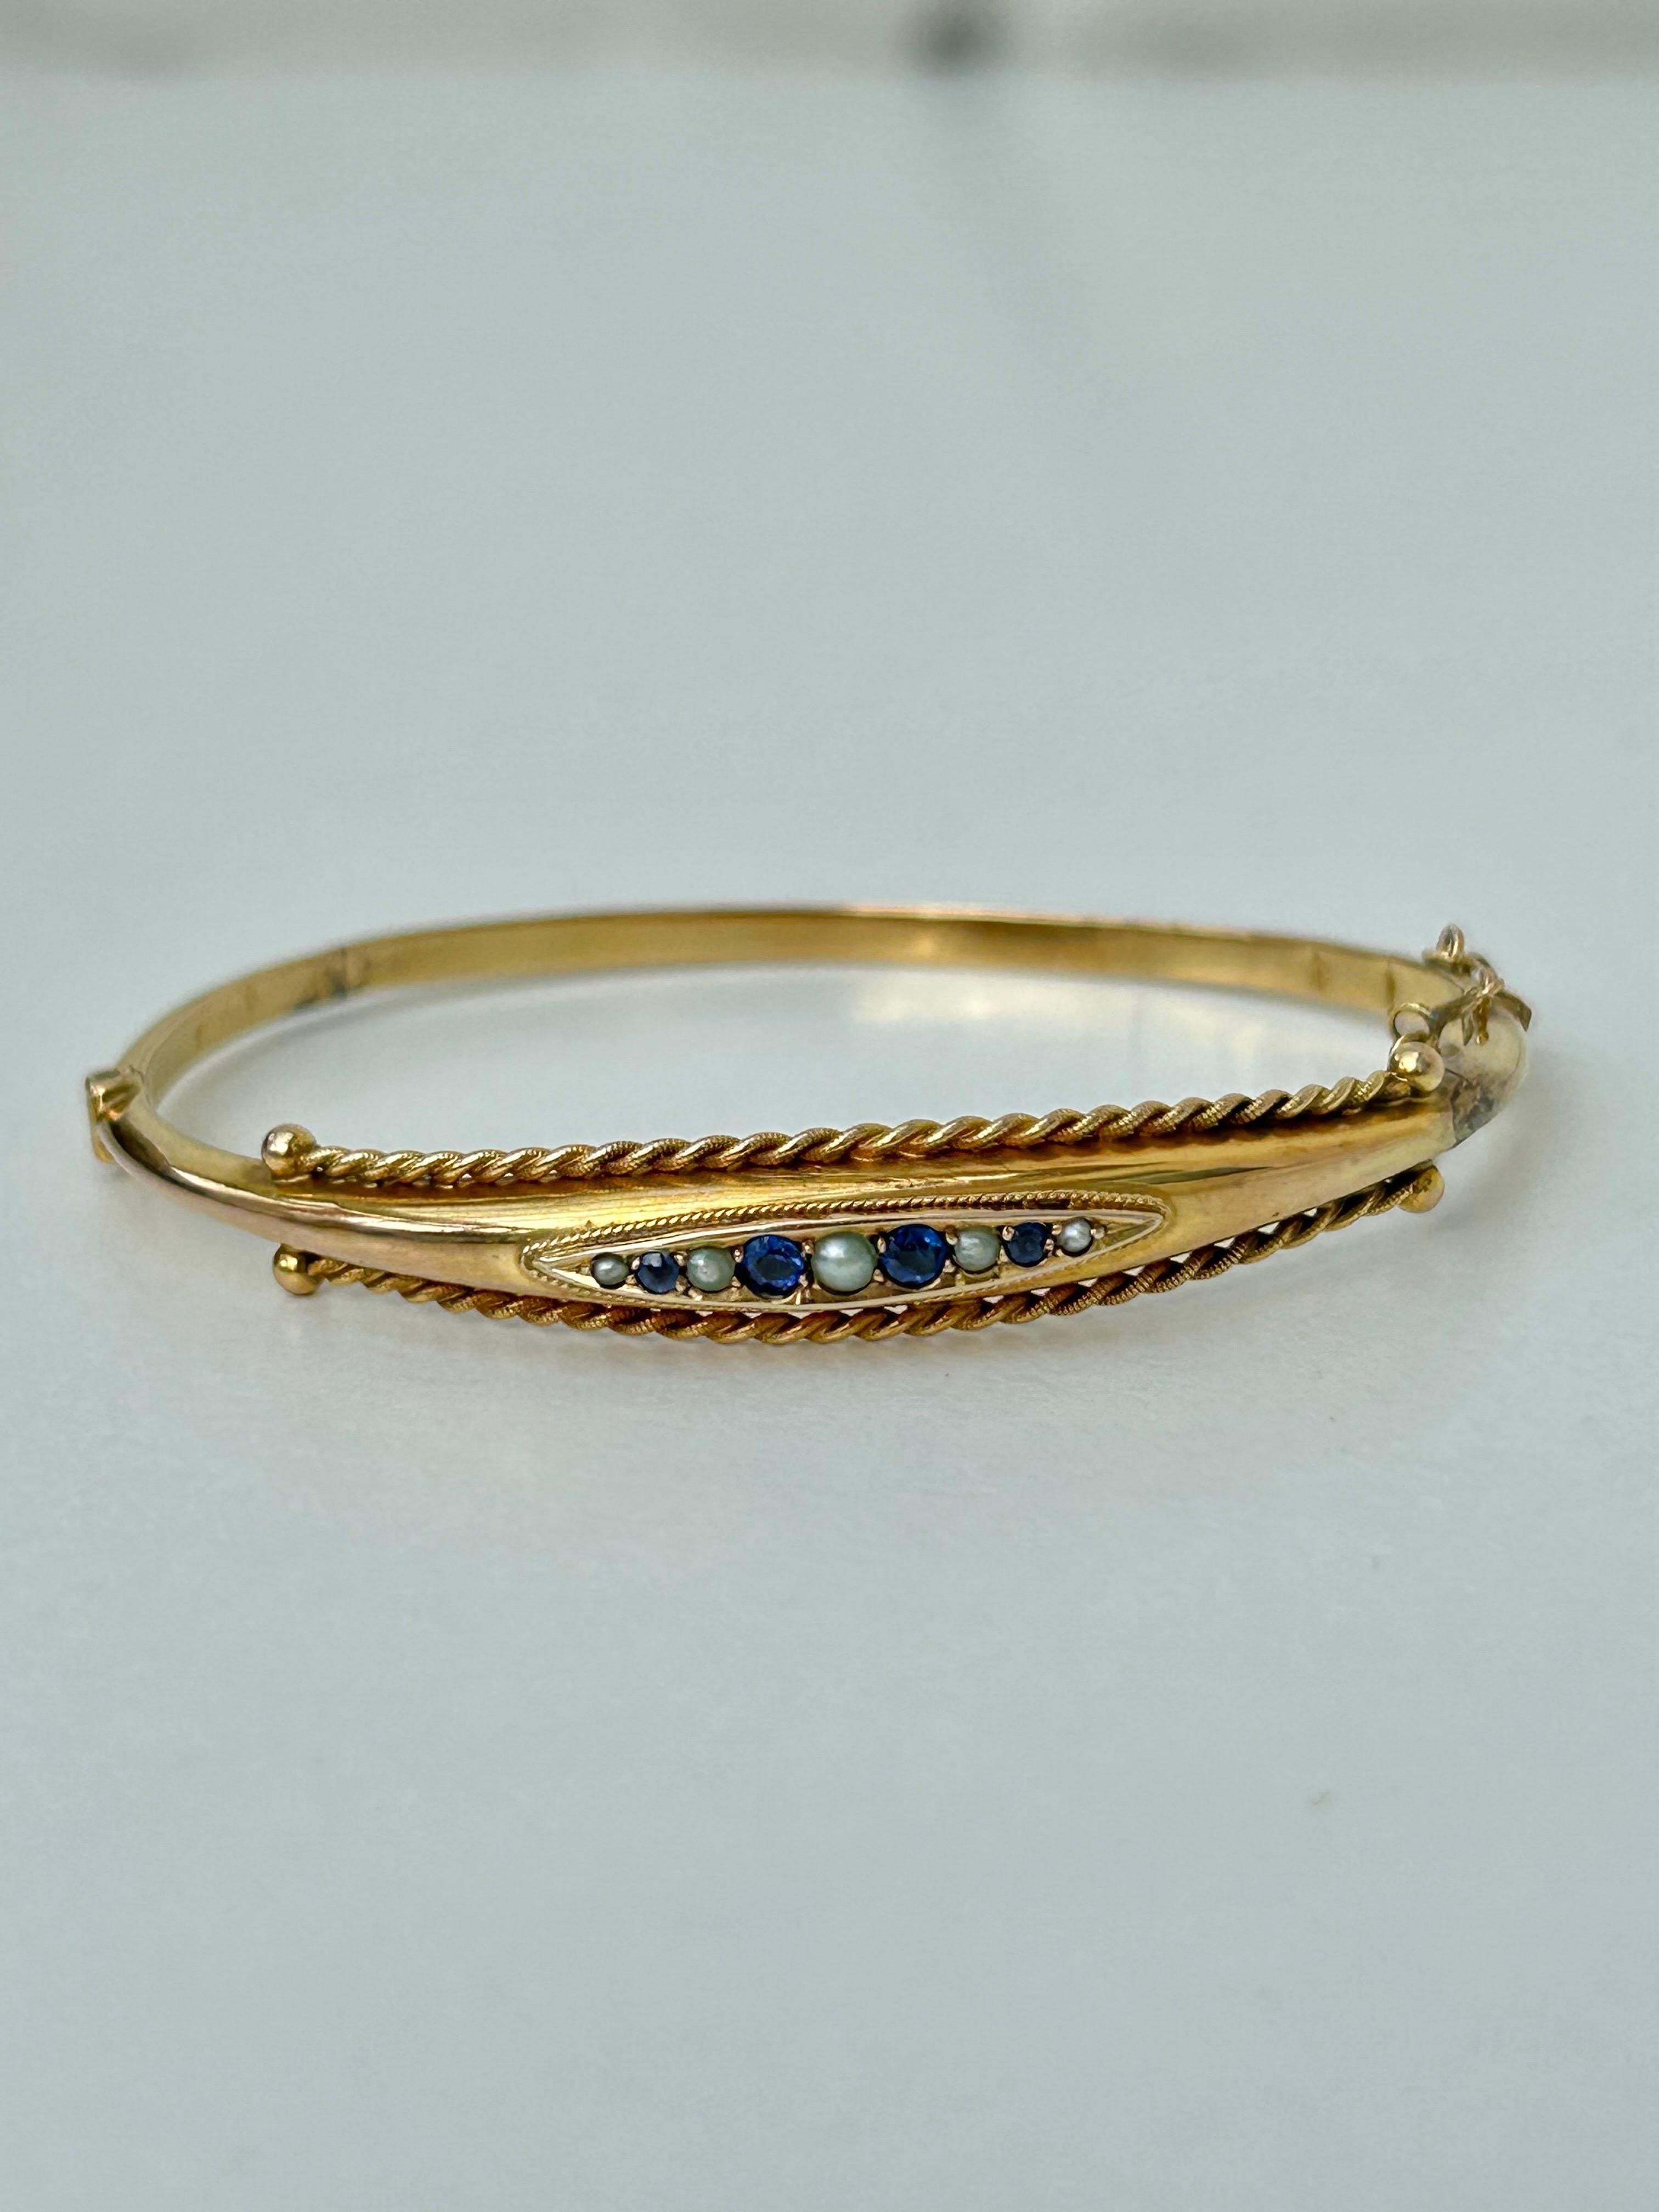 Bracelet ancien en or jaune 9ct, saphir et perles, datant de 1898 

délicieux bracelet en saphir et perles, si doux ! 

L'article est livré sans la boîte figurant sur les photos mais sera présenté dans une boîte cadeau gembank1973.
 
Dimensions :